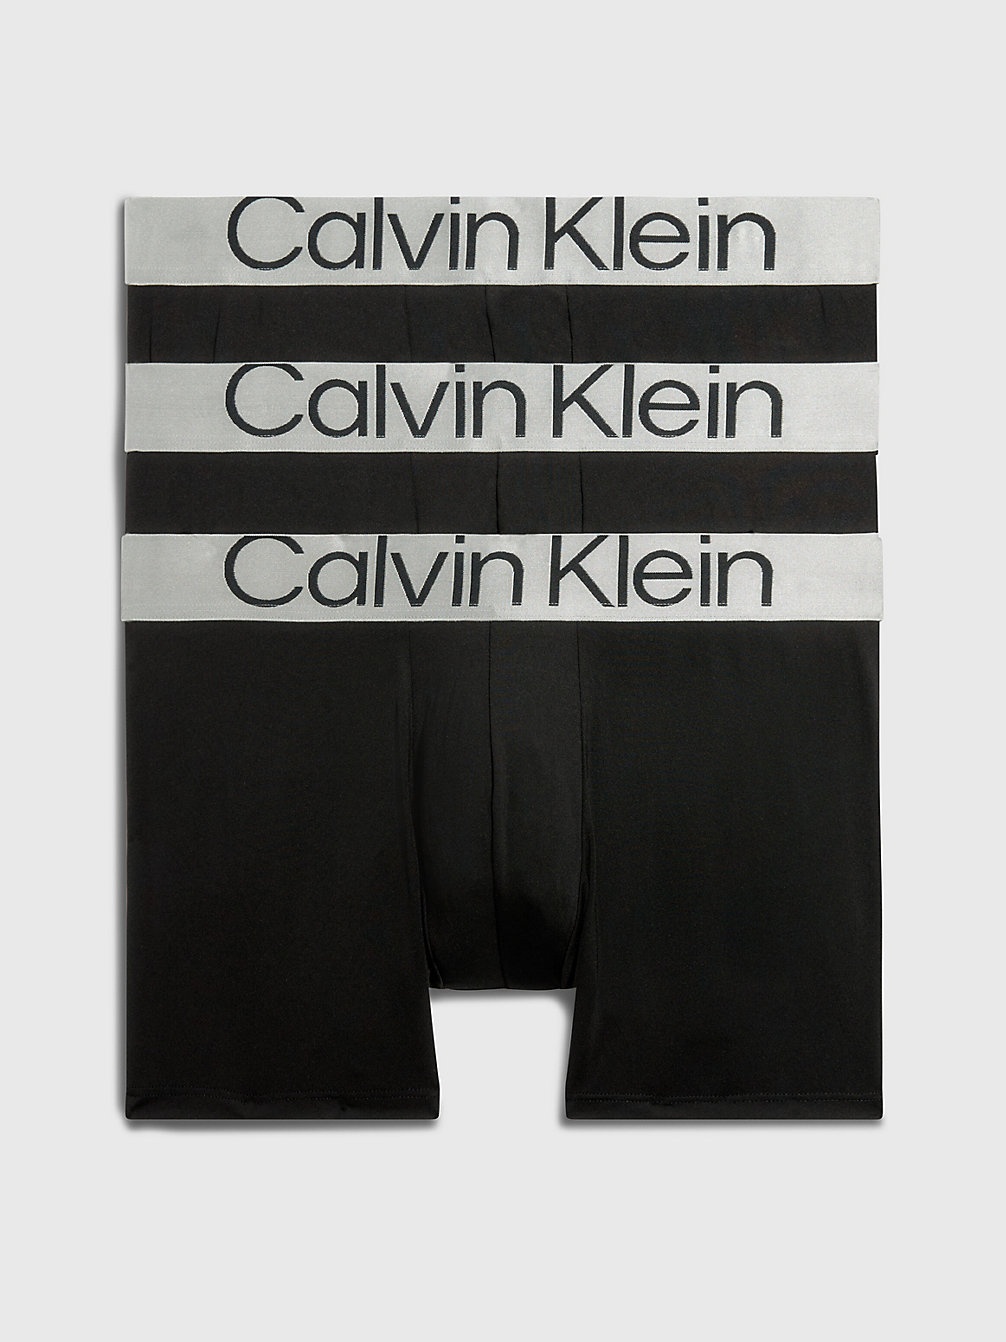 Boxer Aderenti Lunghi In Confezione Da 3 - Steel Micro > BLACK/BLACK/BLACK > undefined uomo > Calvin Klein